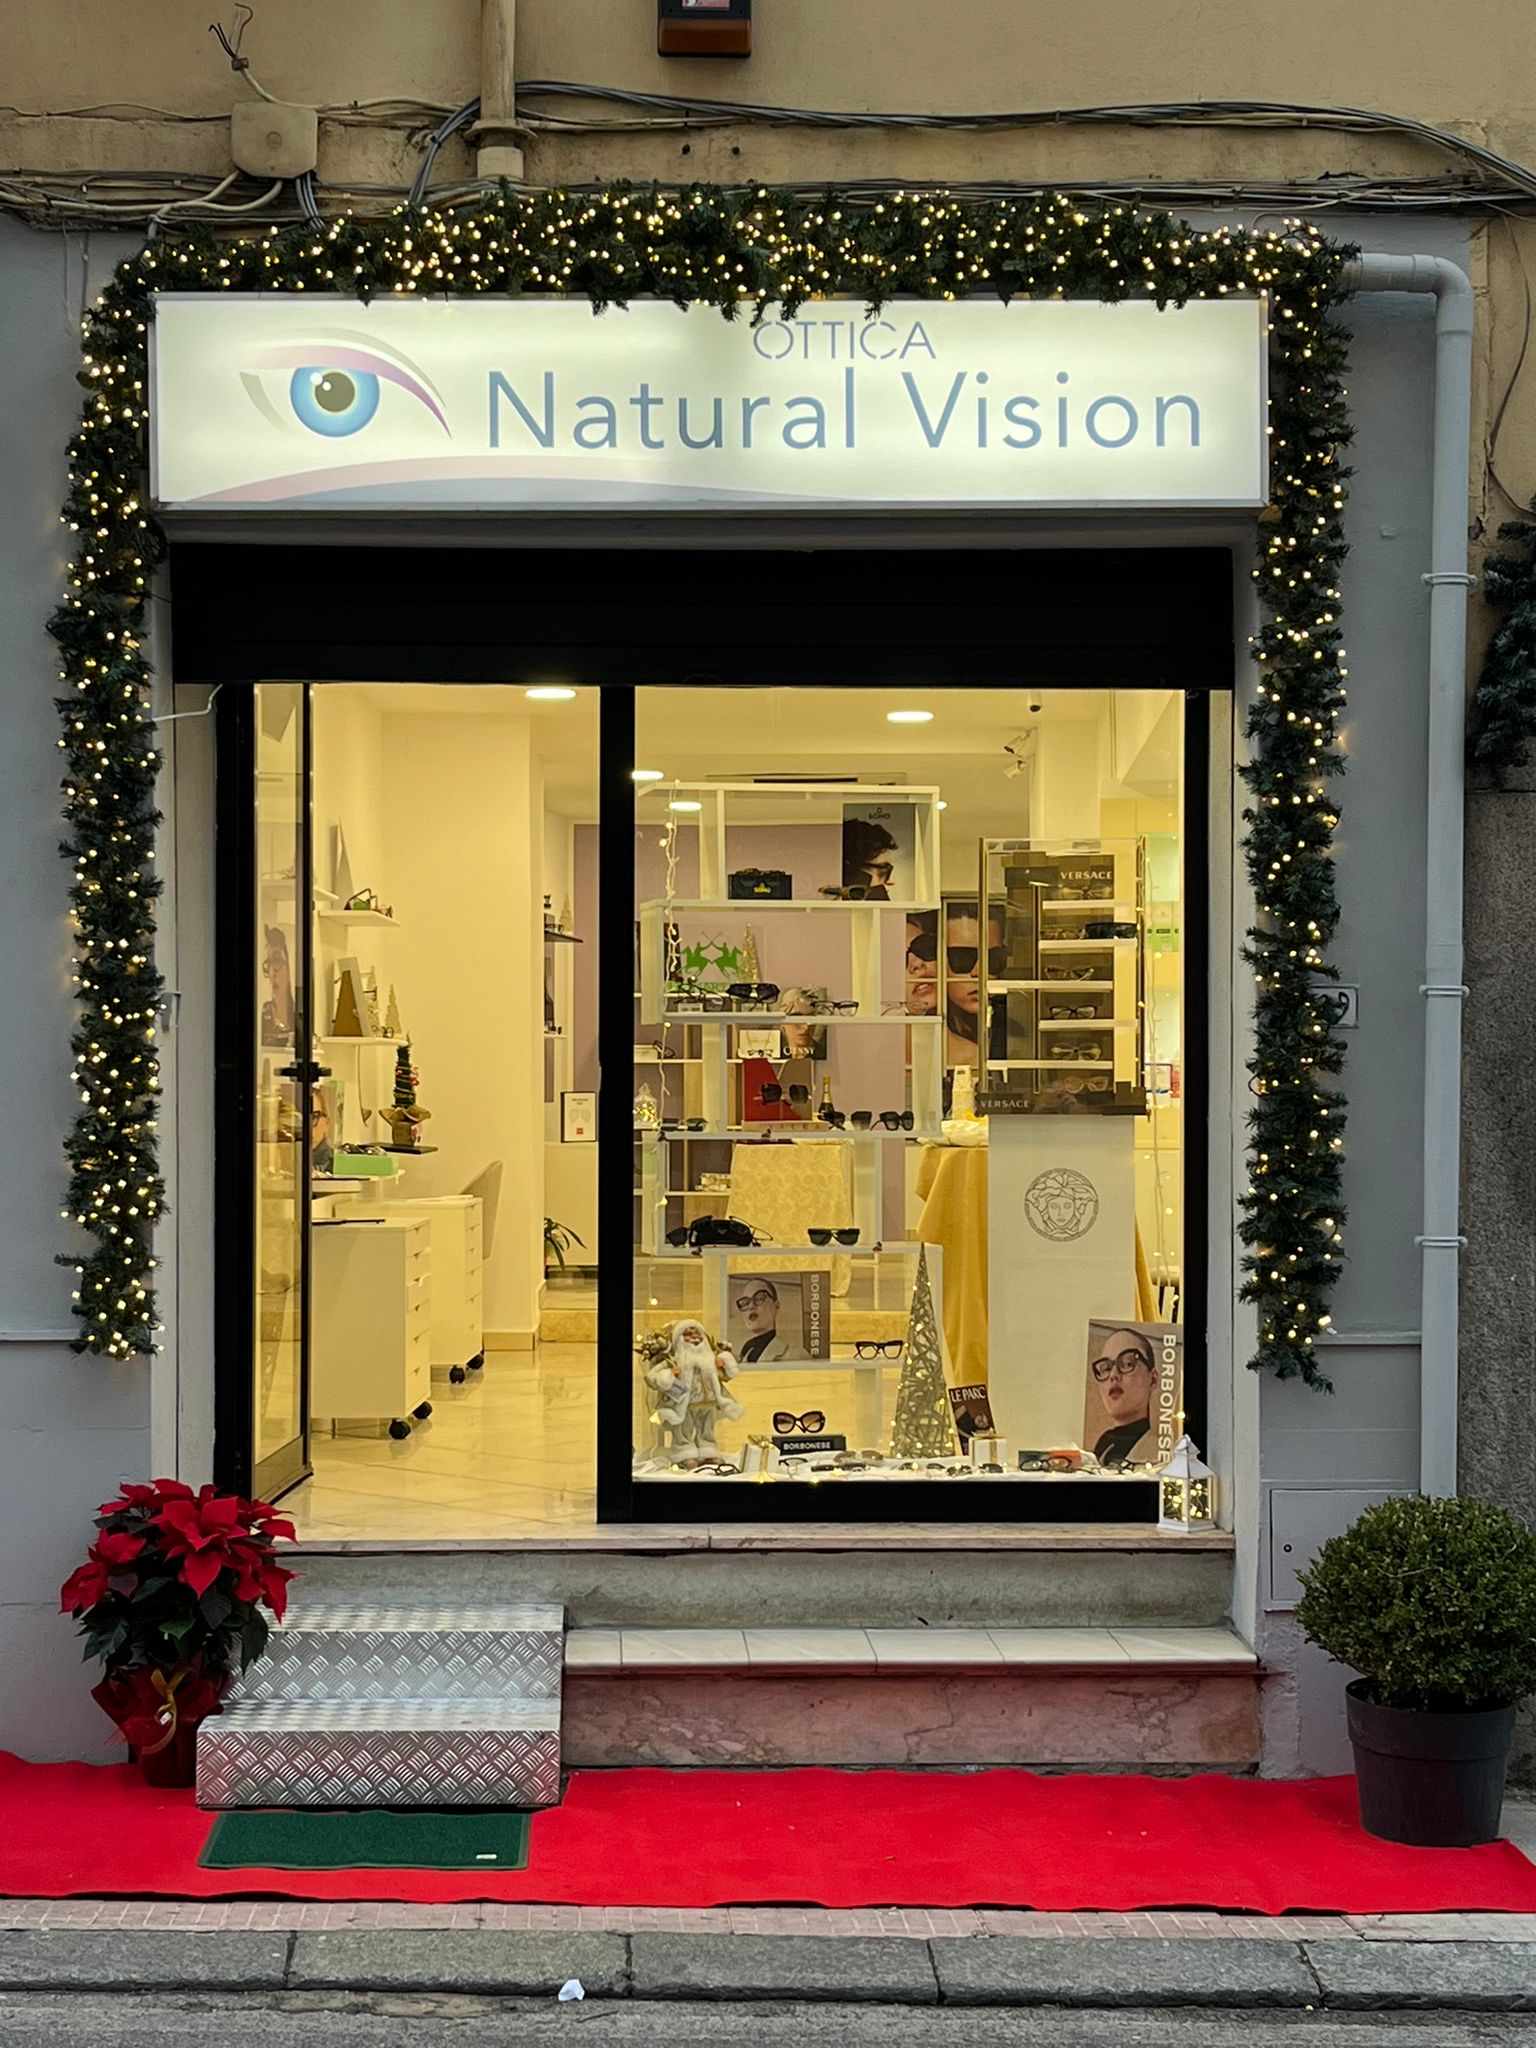 Ottica Natural Vision Negozio Di Ottica Promozioni Occhiali Con Lenti Oftalmiche e Centro Ottico Specializzato - 1